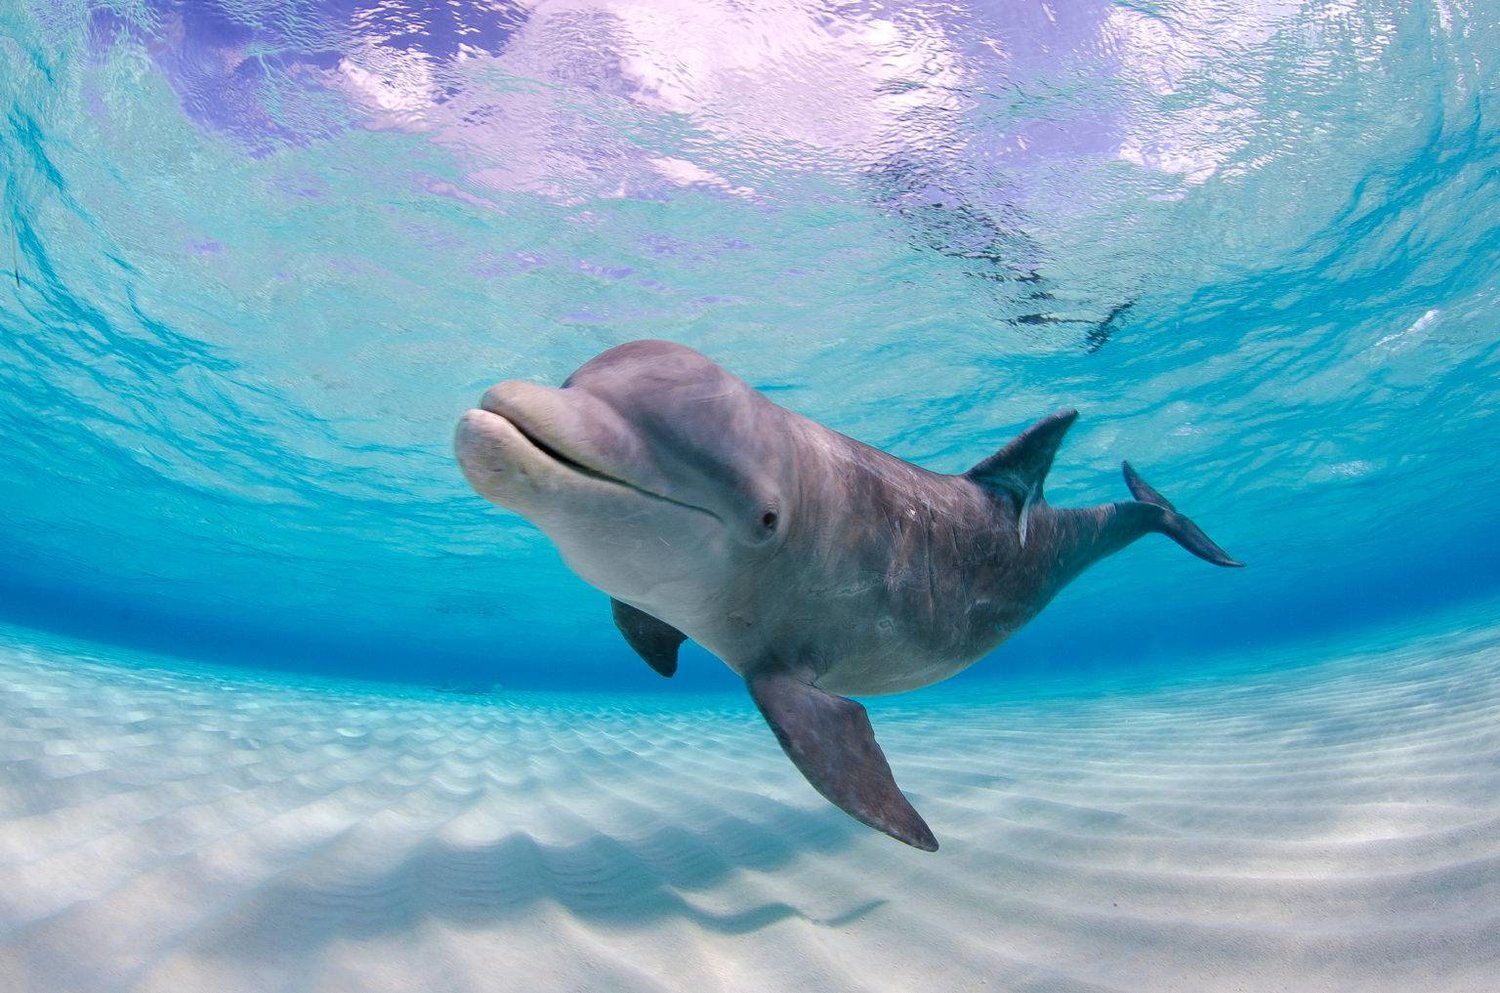 الدلافين قارورية الأنف هي الأكثر شهرة (شاترستوك)